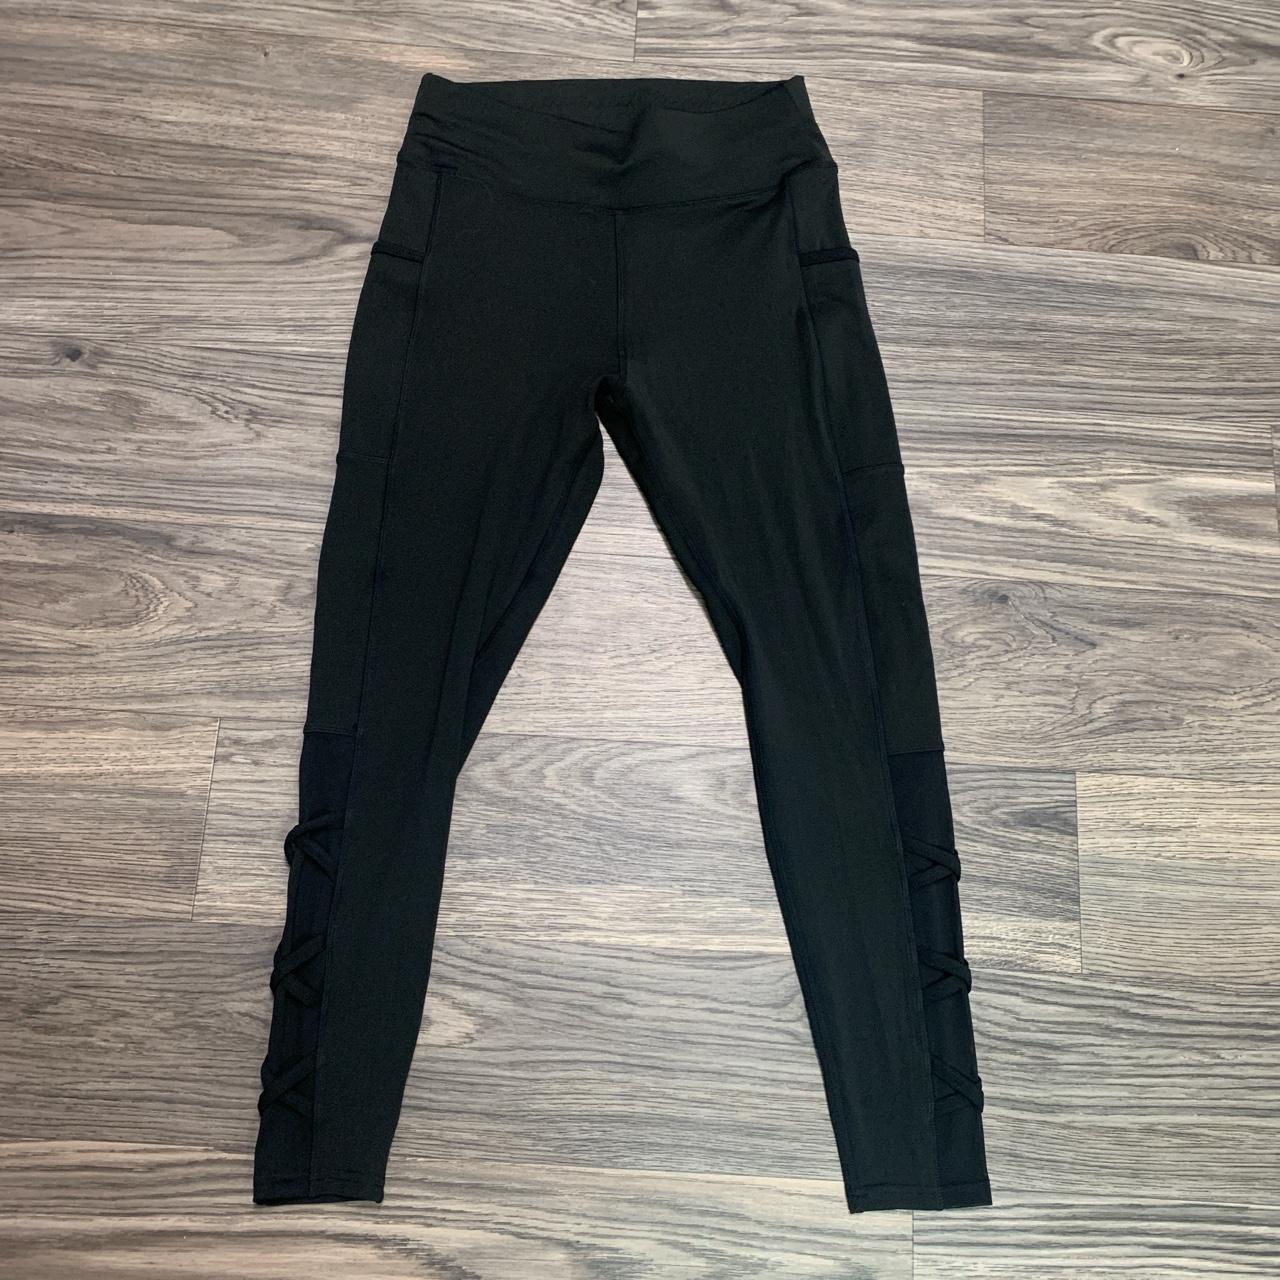 Pop Fit black leggings size large, pockets on the - Depop